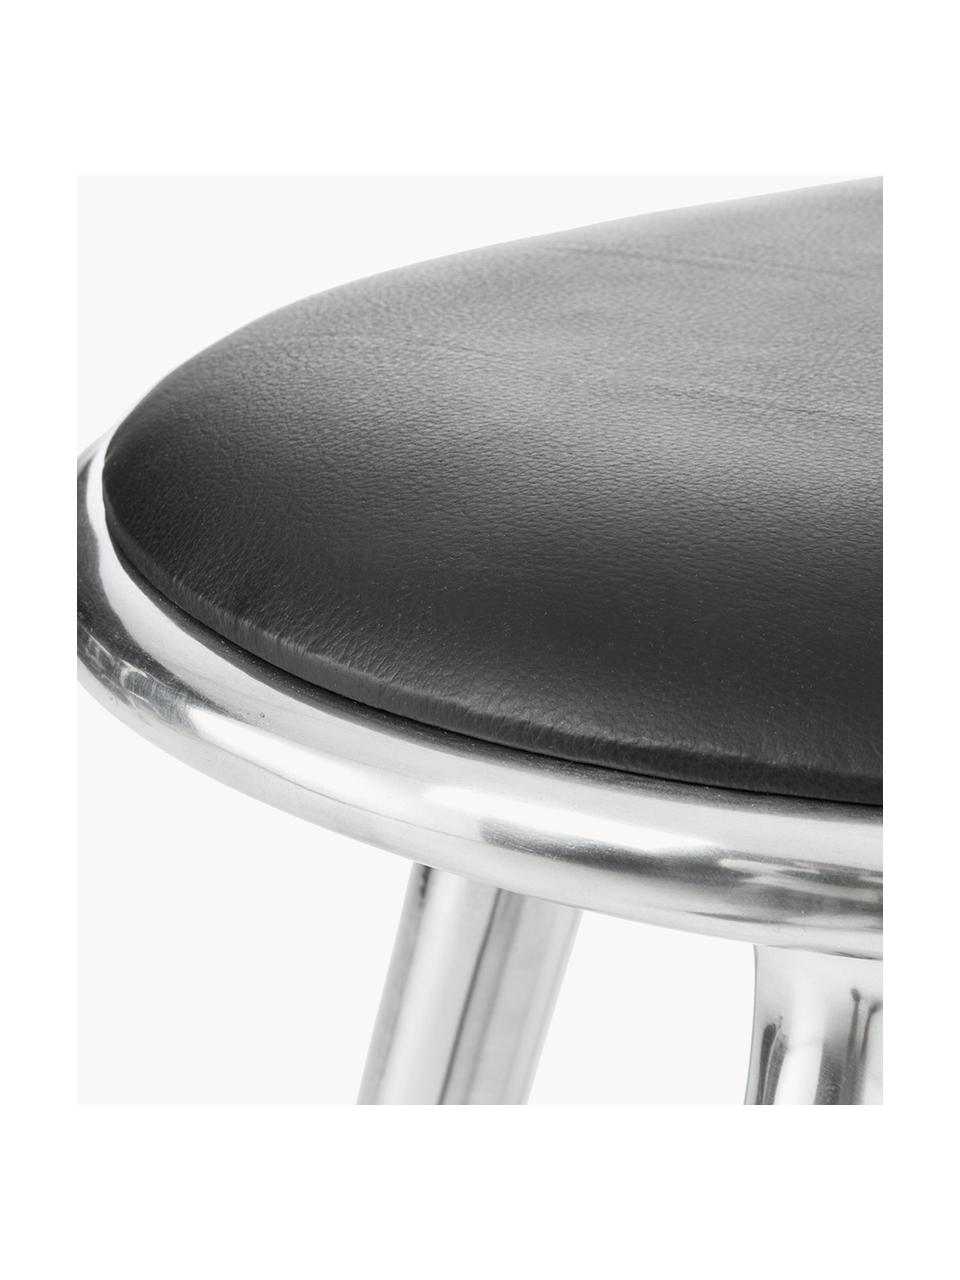 Barhocker High Stool aus Aluminium und Leder, Beine: Aluminium, beschichtet, Sitzfläche: Leder, Silberfarben, Leder Schwarz, B 45 x H 69 cm